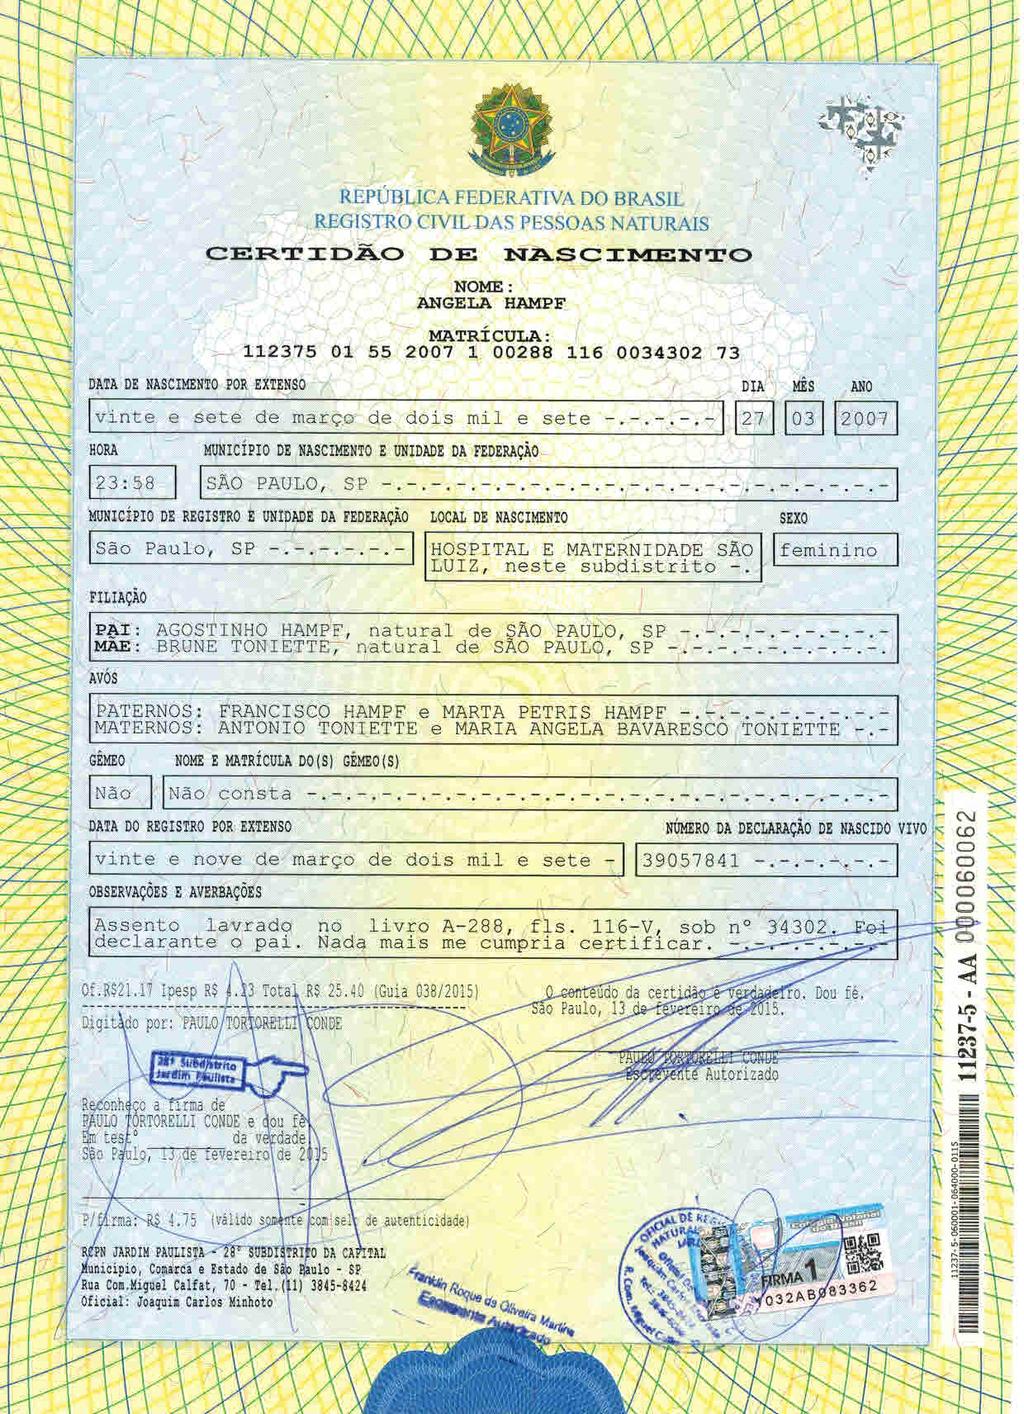 fls. 56 Este documento é cópia do original, assinado digitalmente por CECILIA SILVEIRA GONCALVES e Tribunal de Justica Sao Paulo, protocolado em 23/03/2015 às 18:25, sob o número